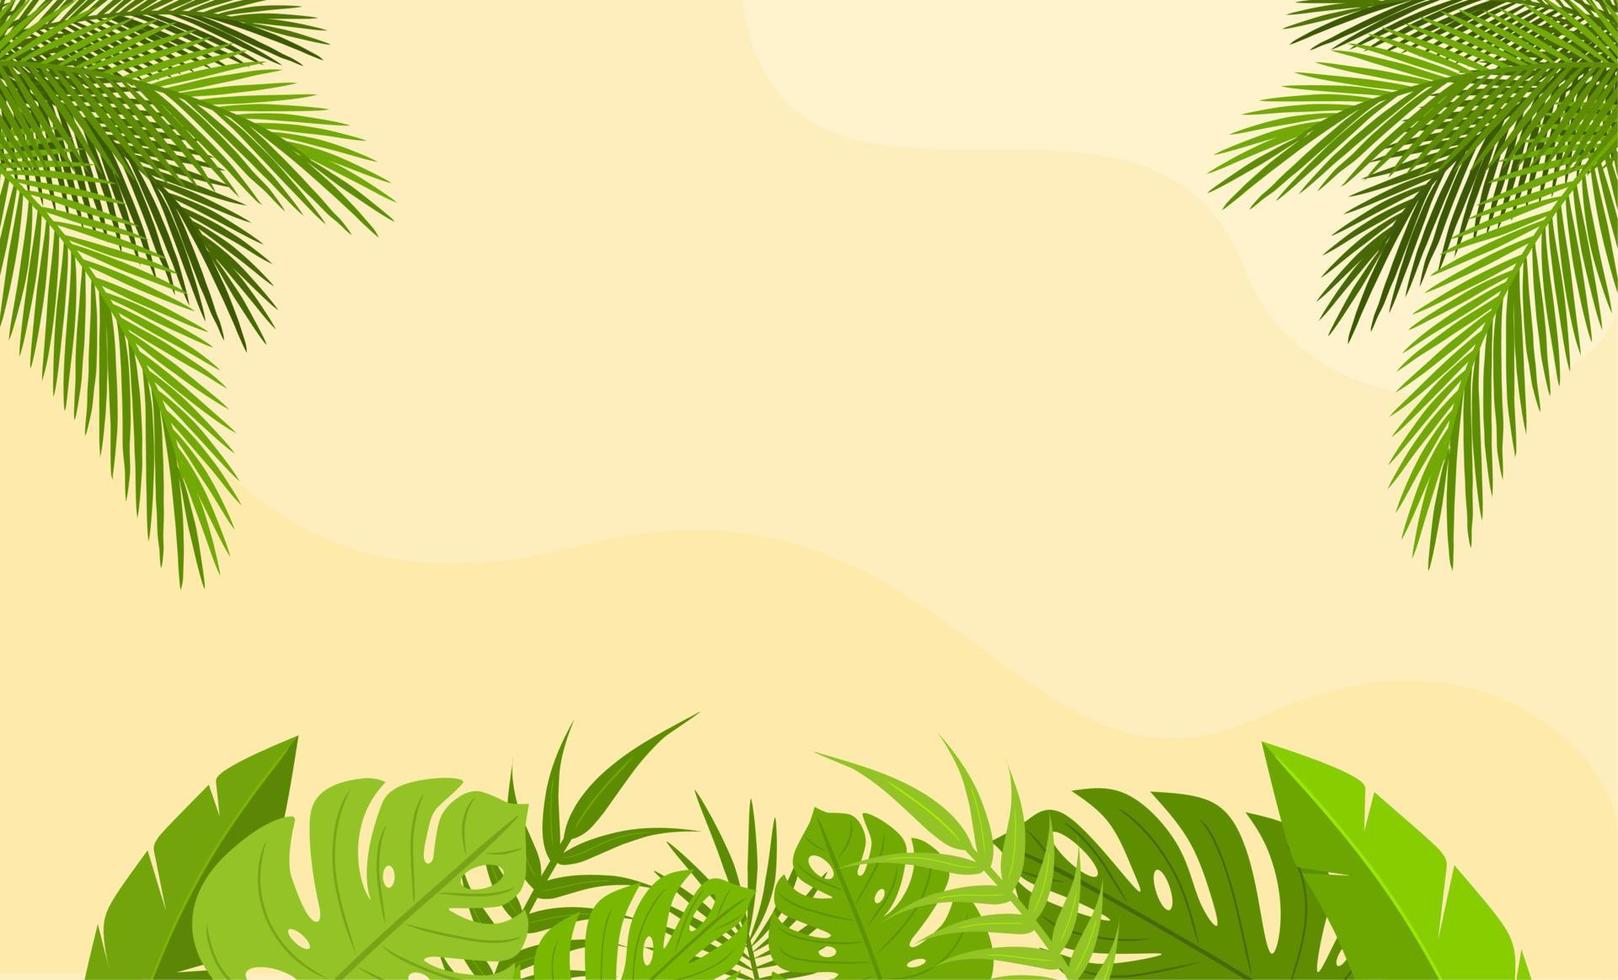 conception de vecteur de fond de feuilles tropicales. l'été laisse une illustration plate. bannière simple avec espace de copie